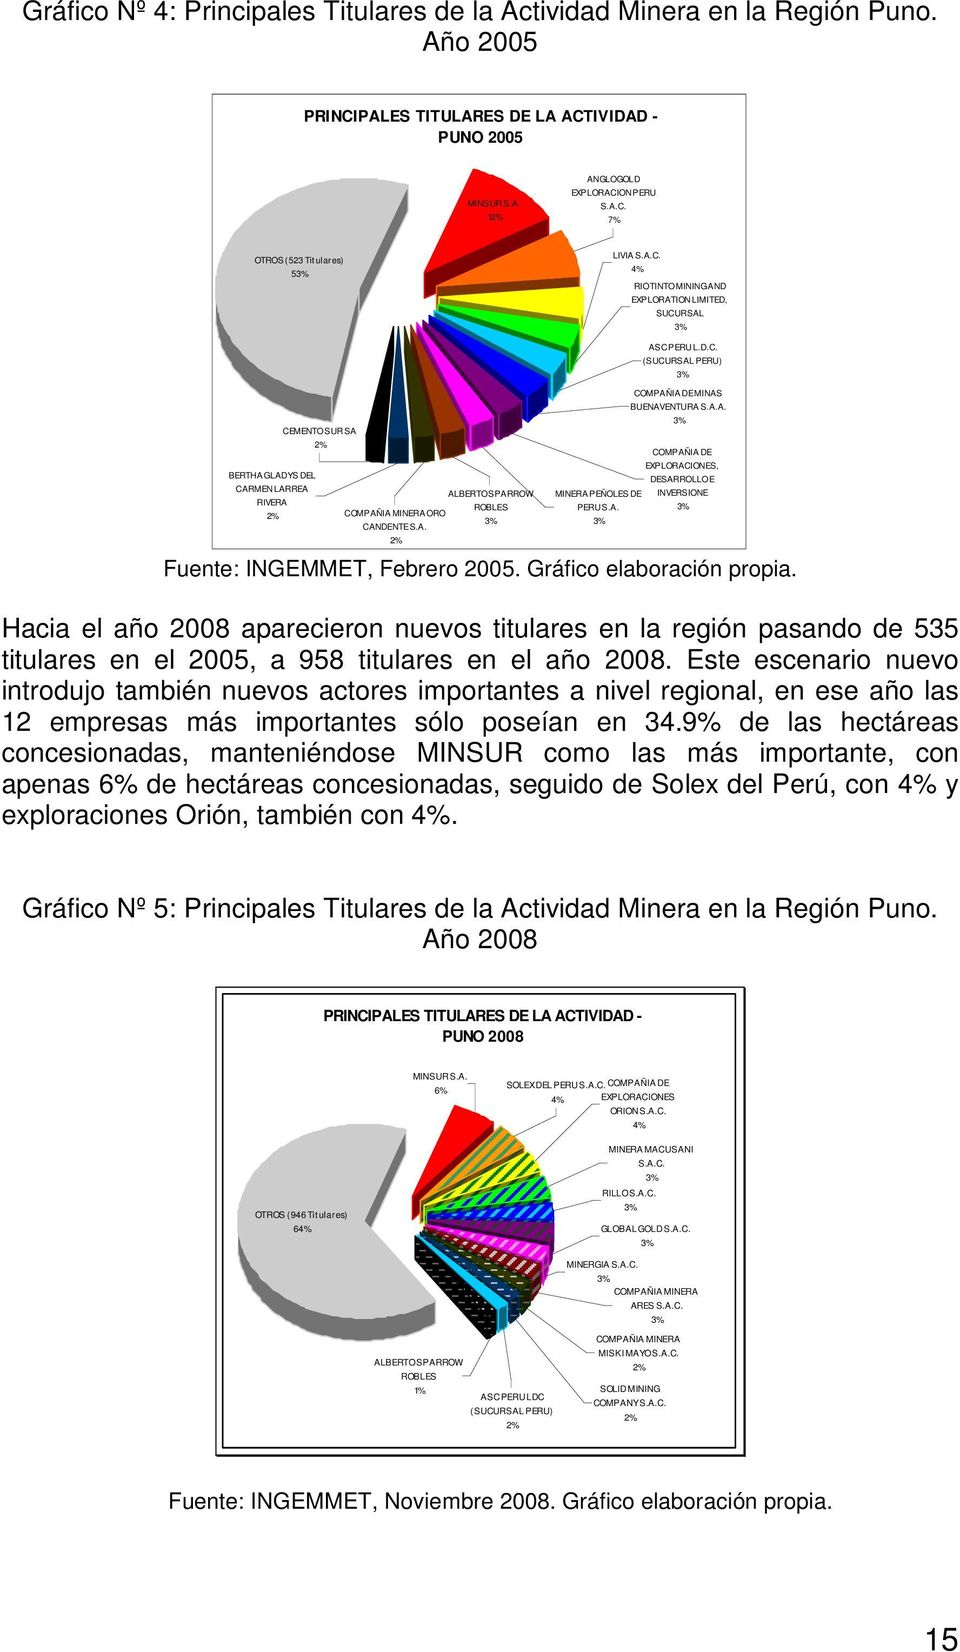 A. 2% 3% COMPAÑIA DE EXPLORACIONES, DESARROLLO E MINERA PEÑOLES DE INVERSIONE PERU S.A. 3% 3% Fuente: INGEMMET, Febrero 2005. Gráfico elaboración propia.